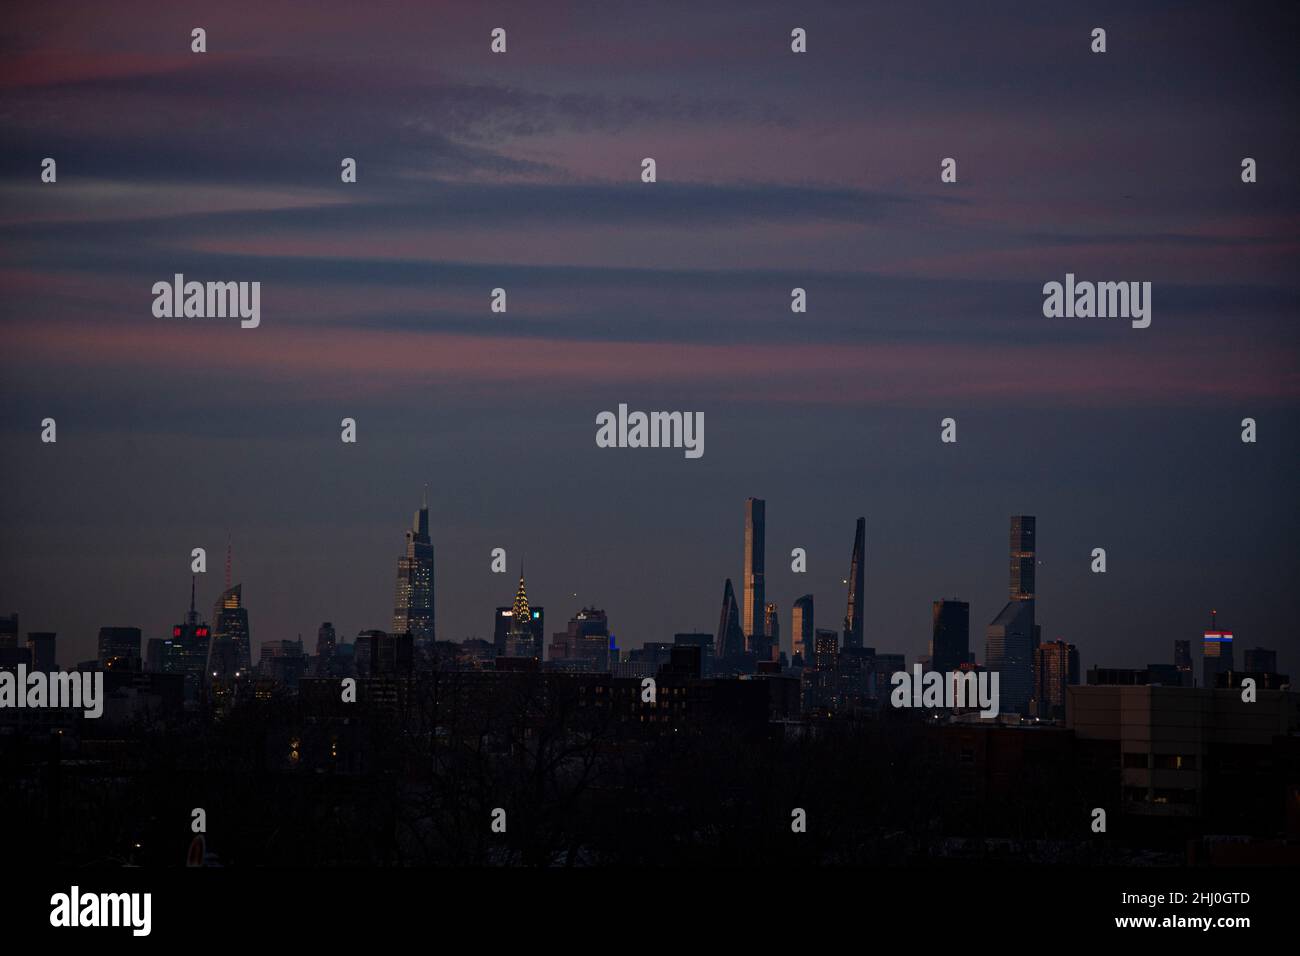 New York: Atemberaubender Sonnenuntergang in Brooklyn mit Blick auf die Skyline Manhattans Stock Photo